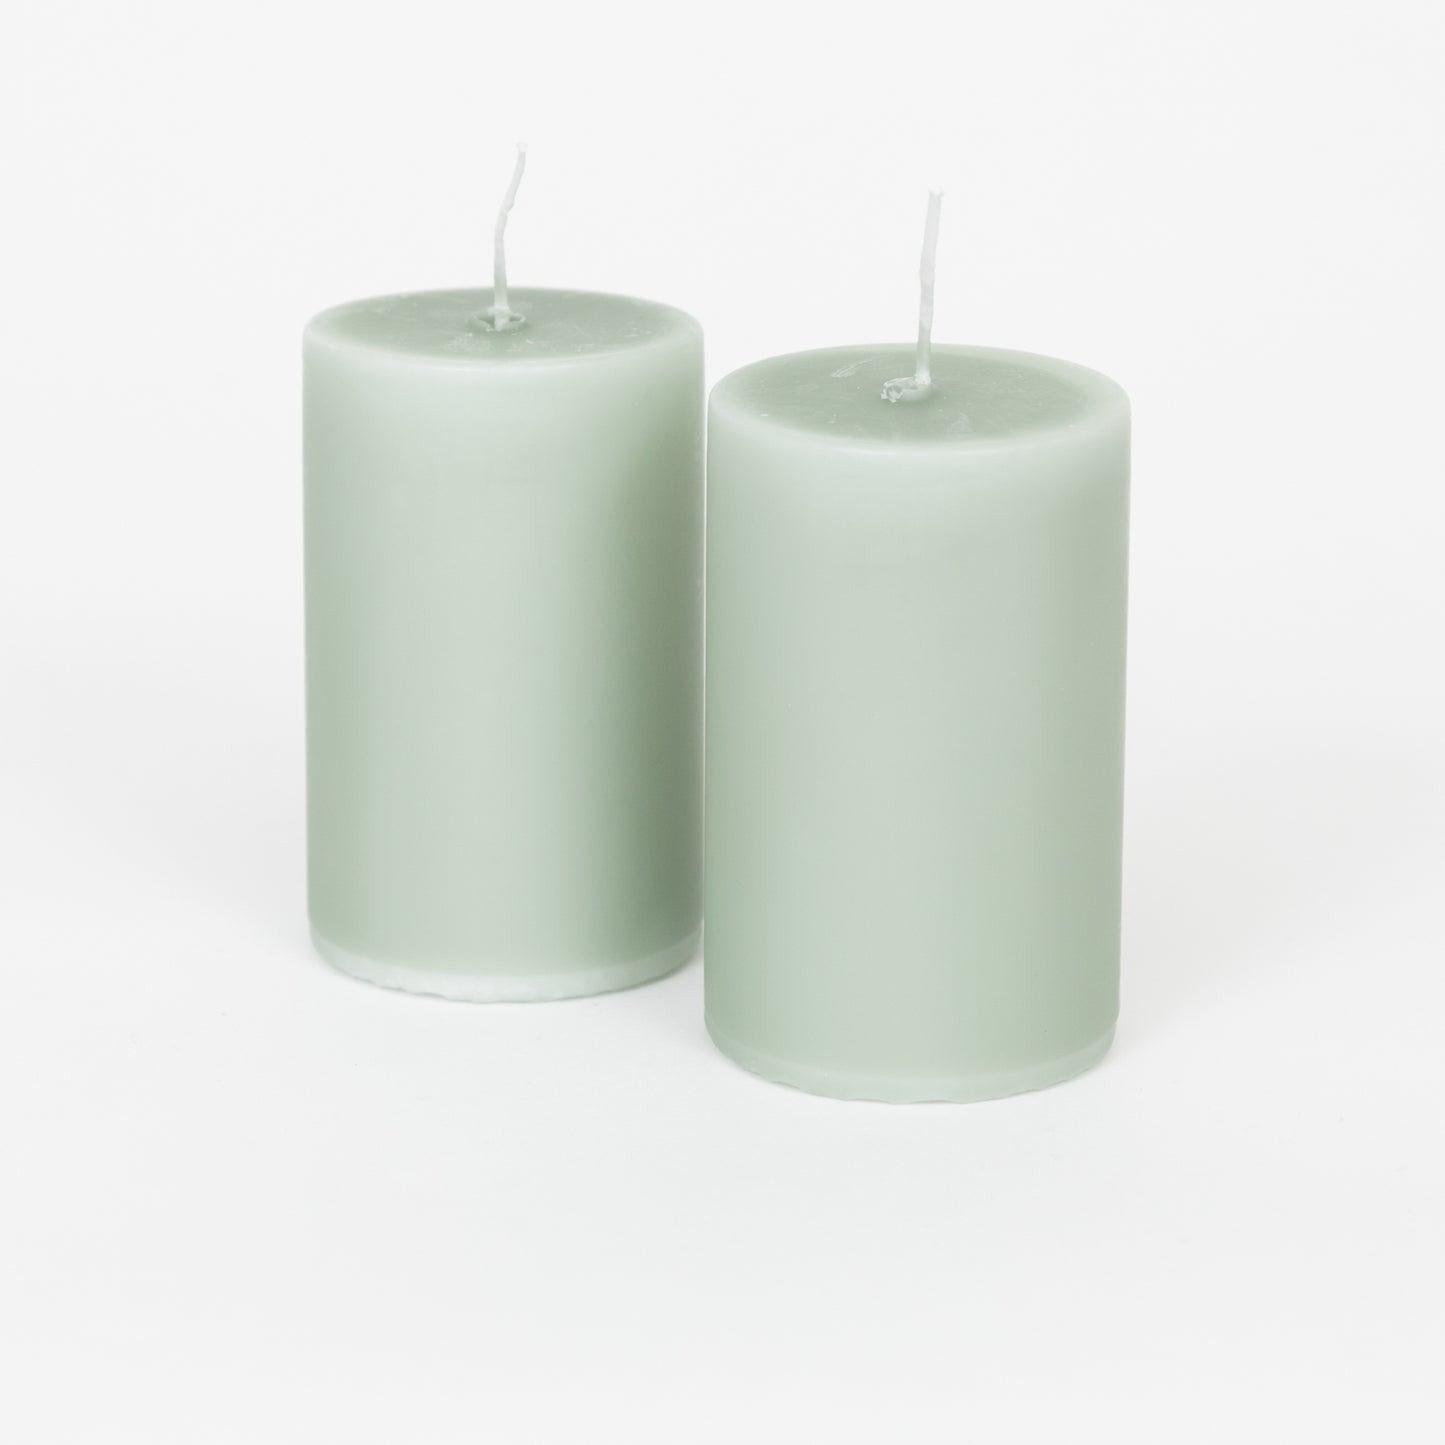 Ib Laursen Medium Pillar Candle (10cm) - Pack of 2